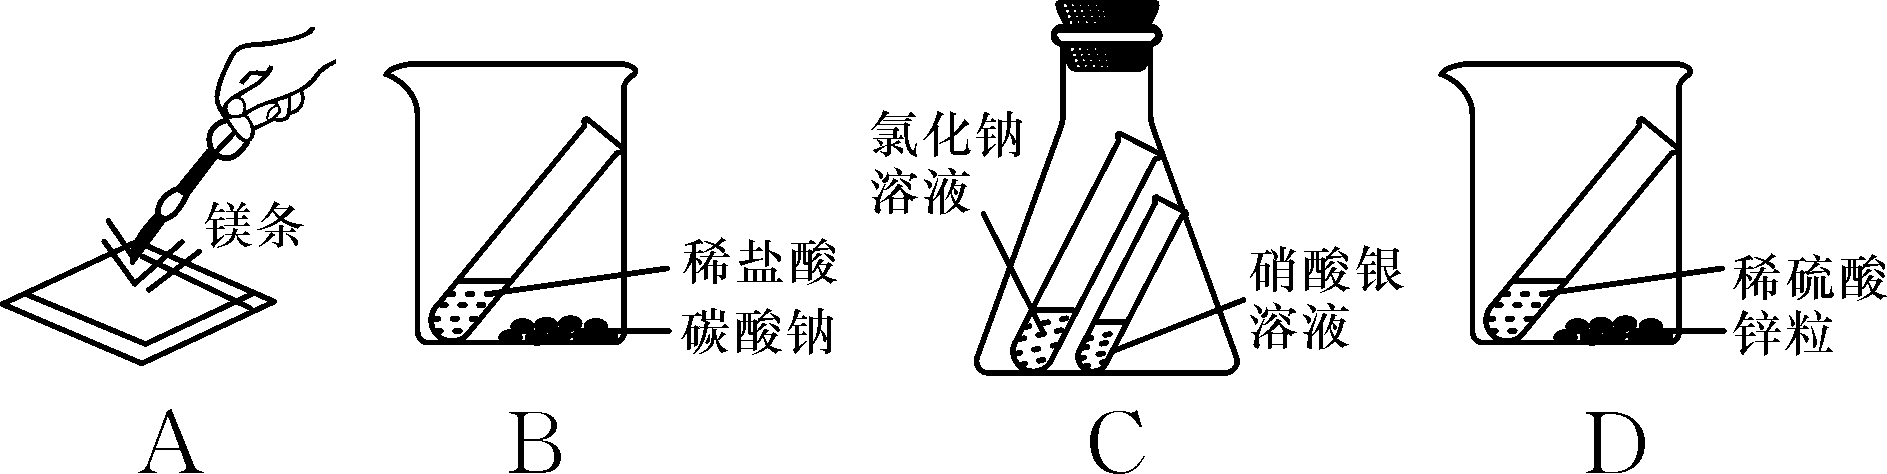 (2017·随州)小李用盐酸与碳酸钙粉末反应验证质量守恒定律,实验装置